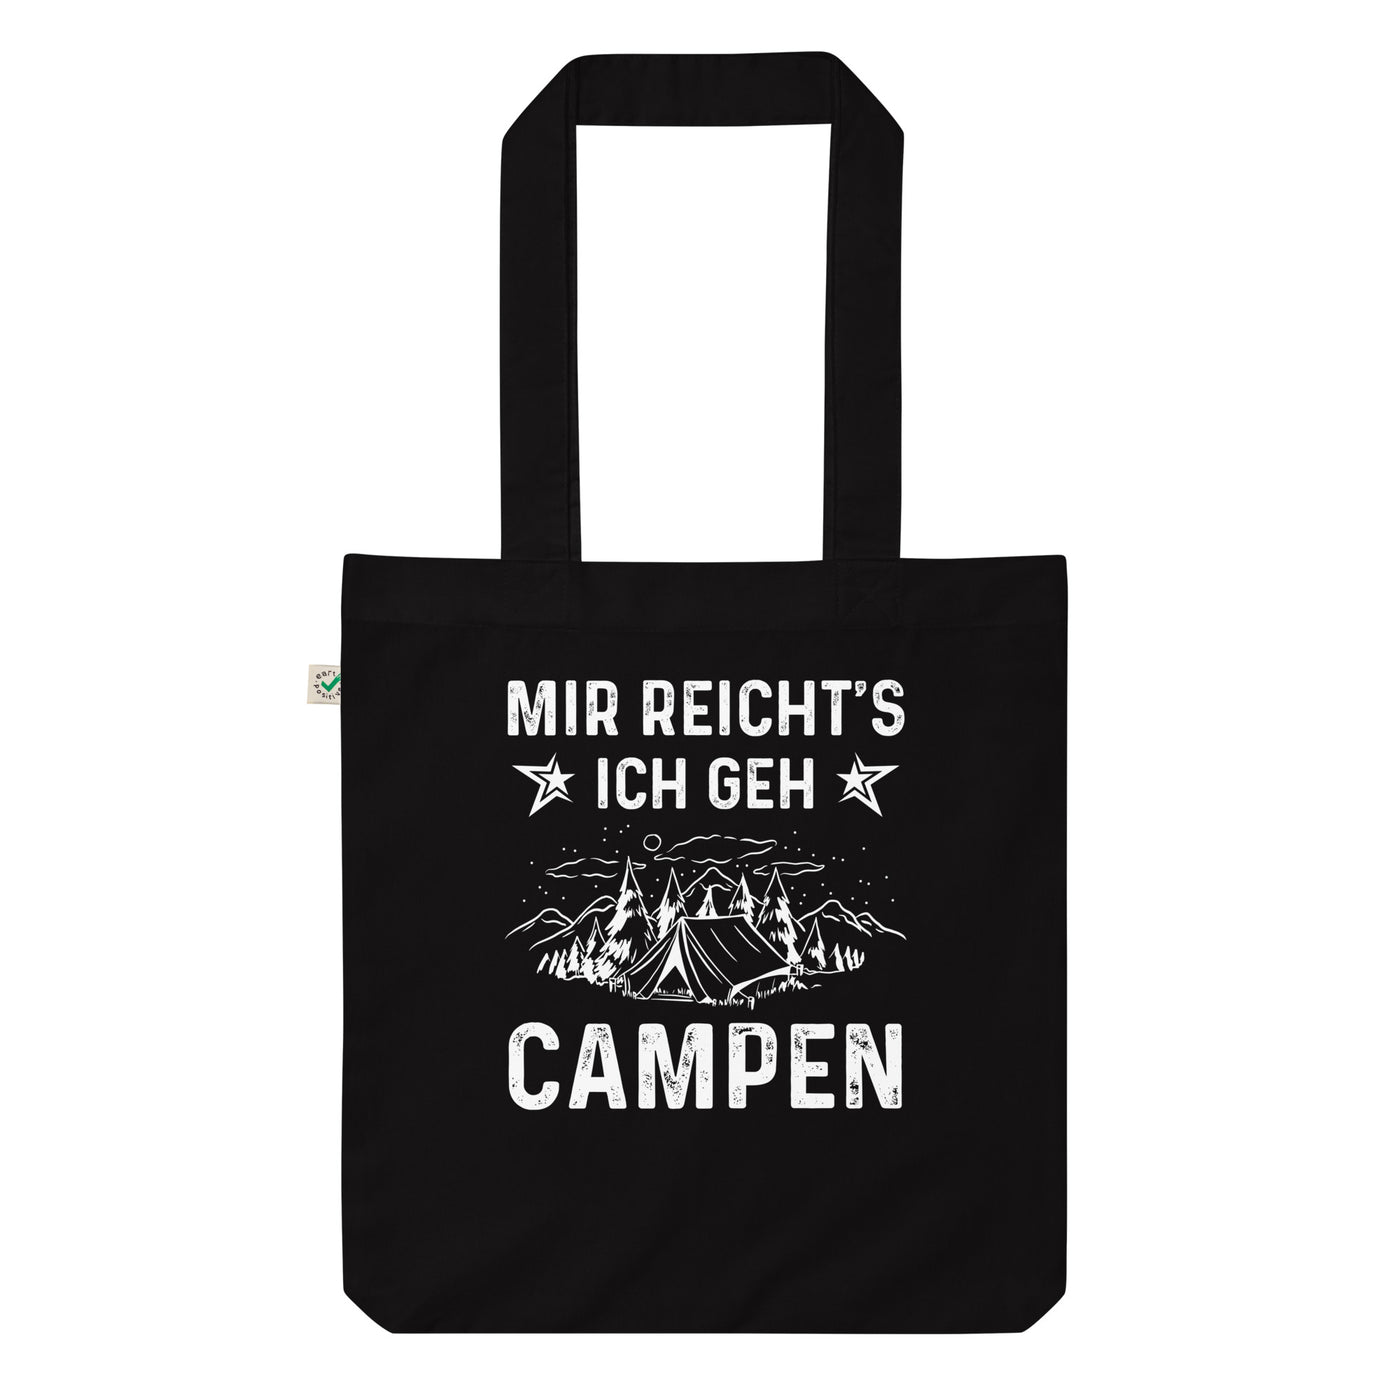 Mir Reicht'S Ich Gen Campen - Organic Einkaufstasche camping Black